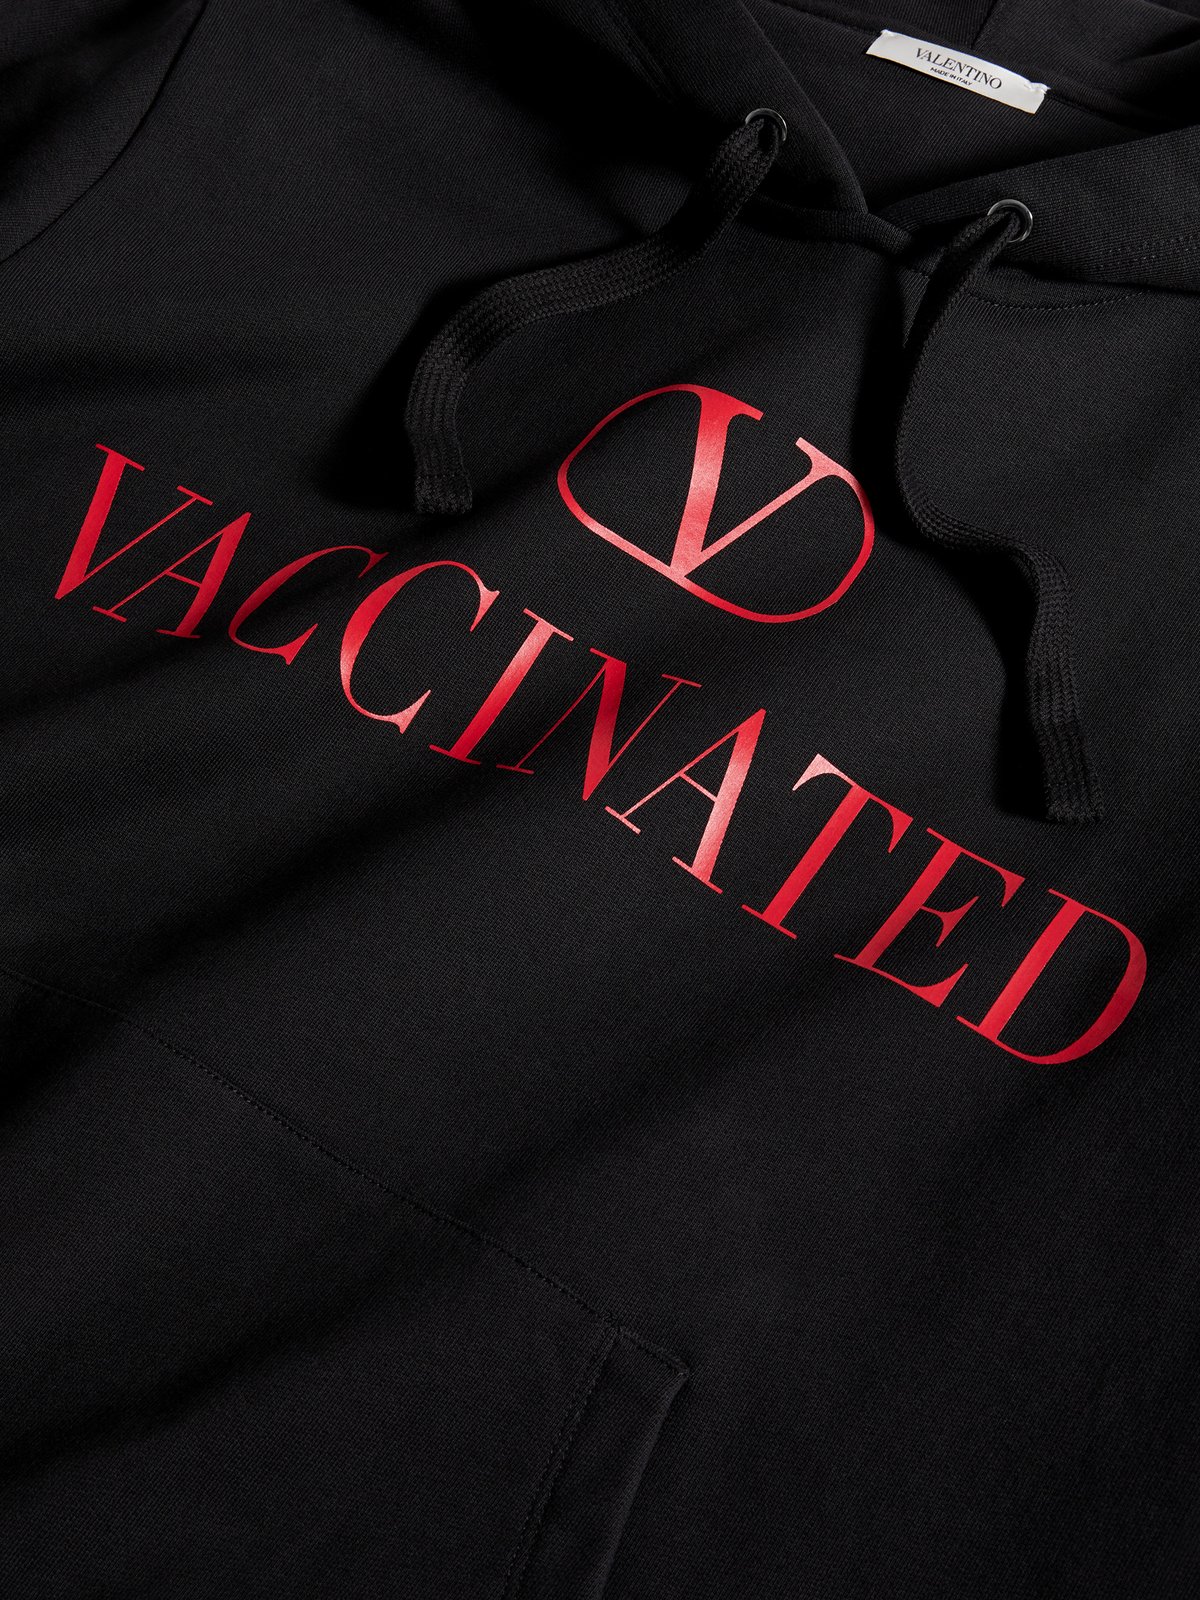 ヴァレンティノから「ワクチン接種済み」フーディーが登場、ワクチン